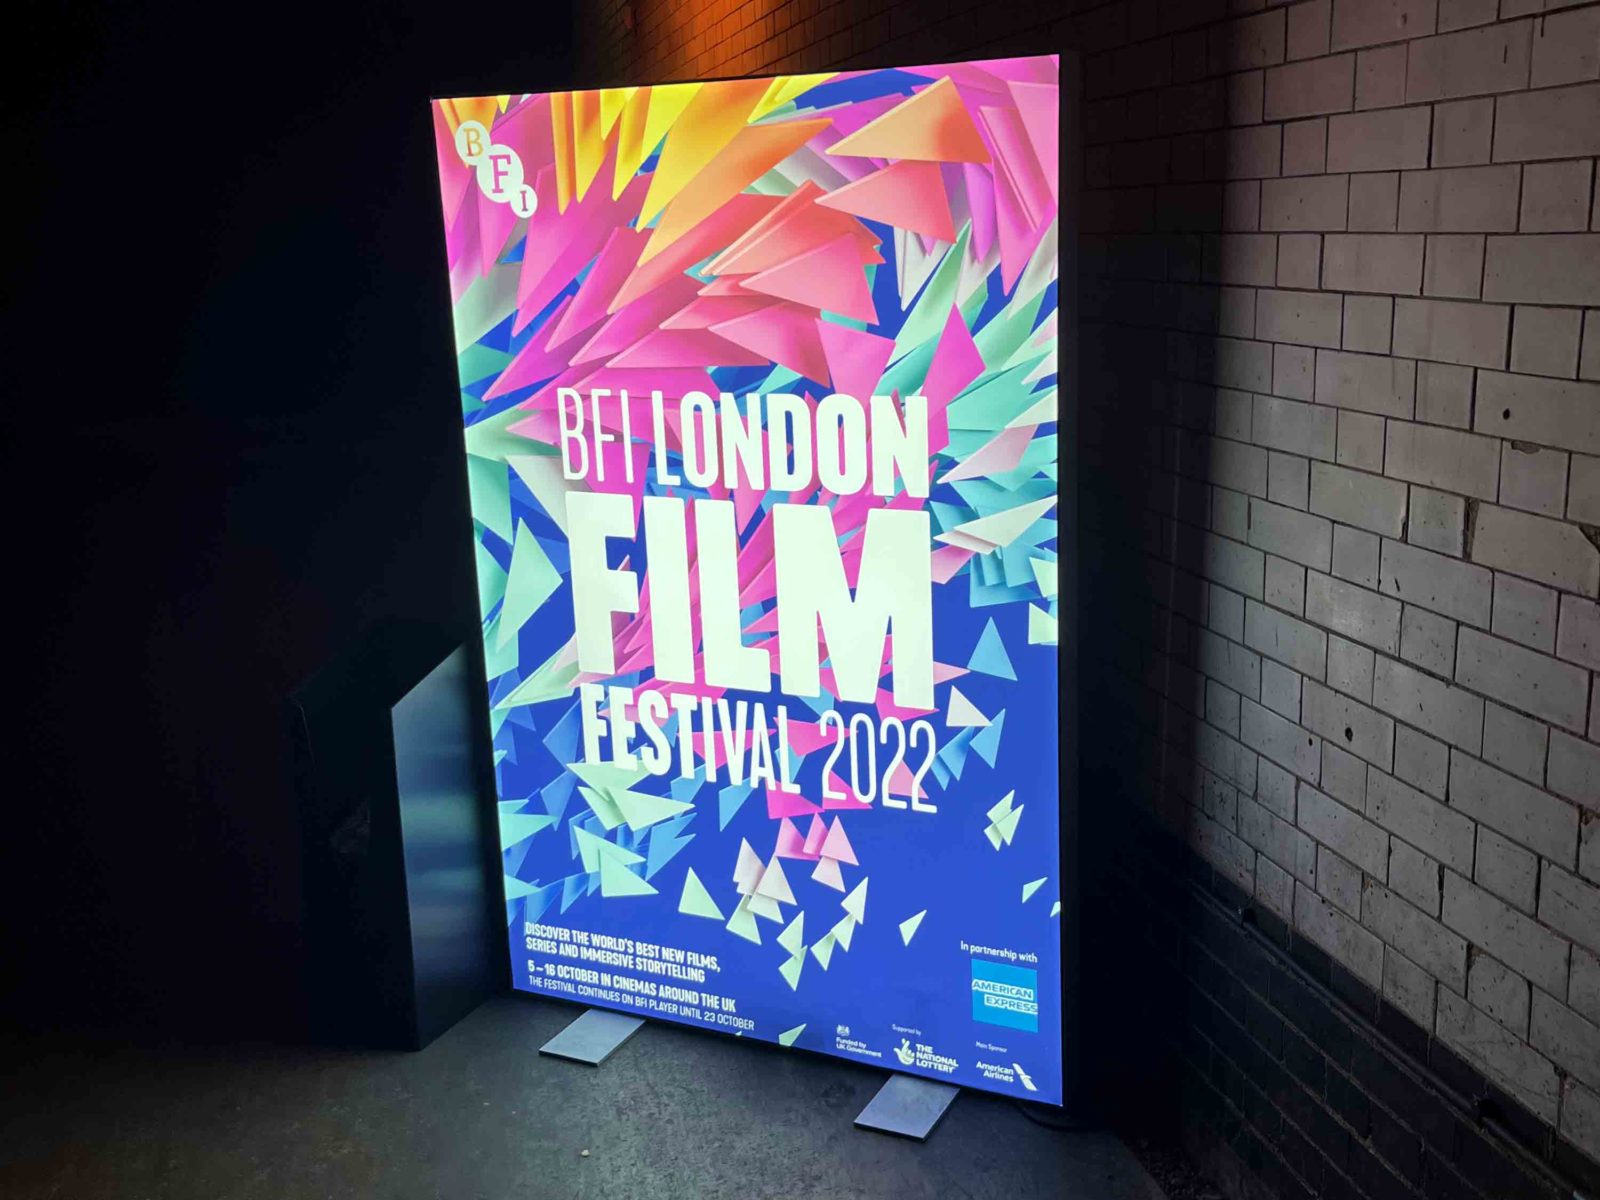 London Film Festival 2022